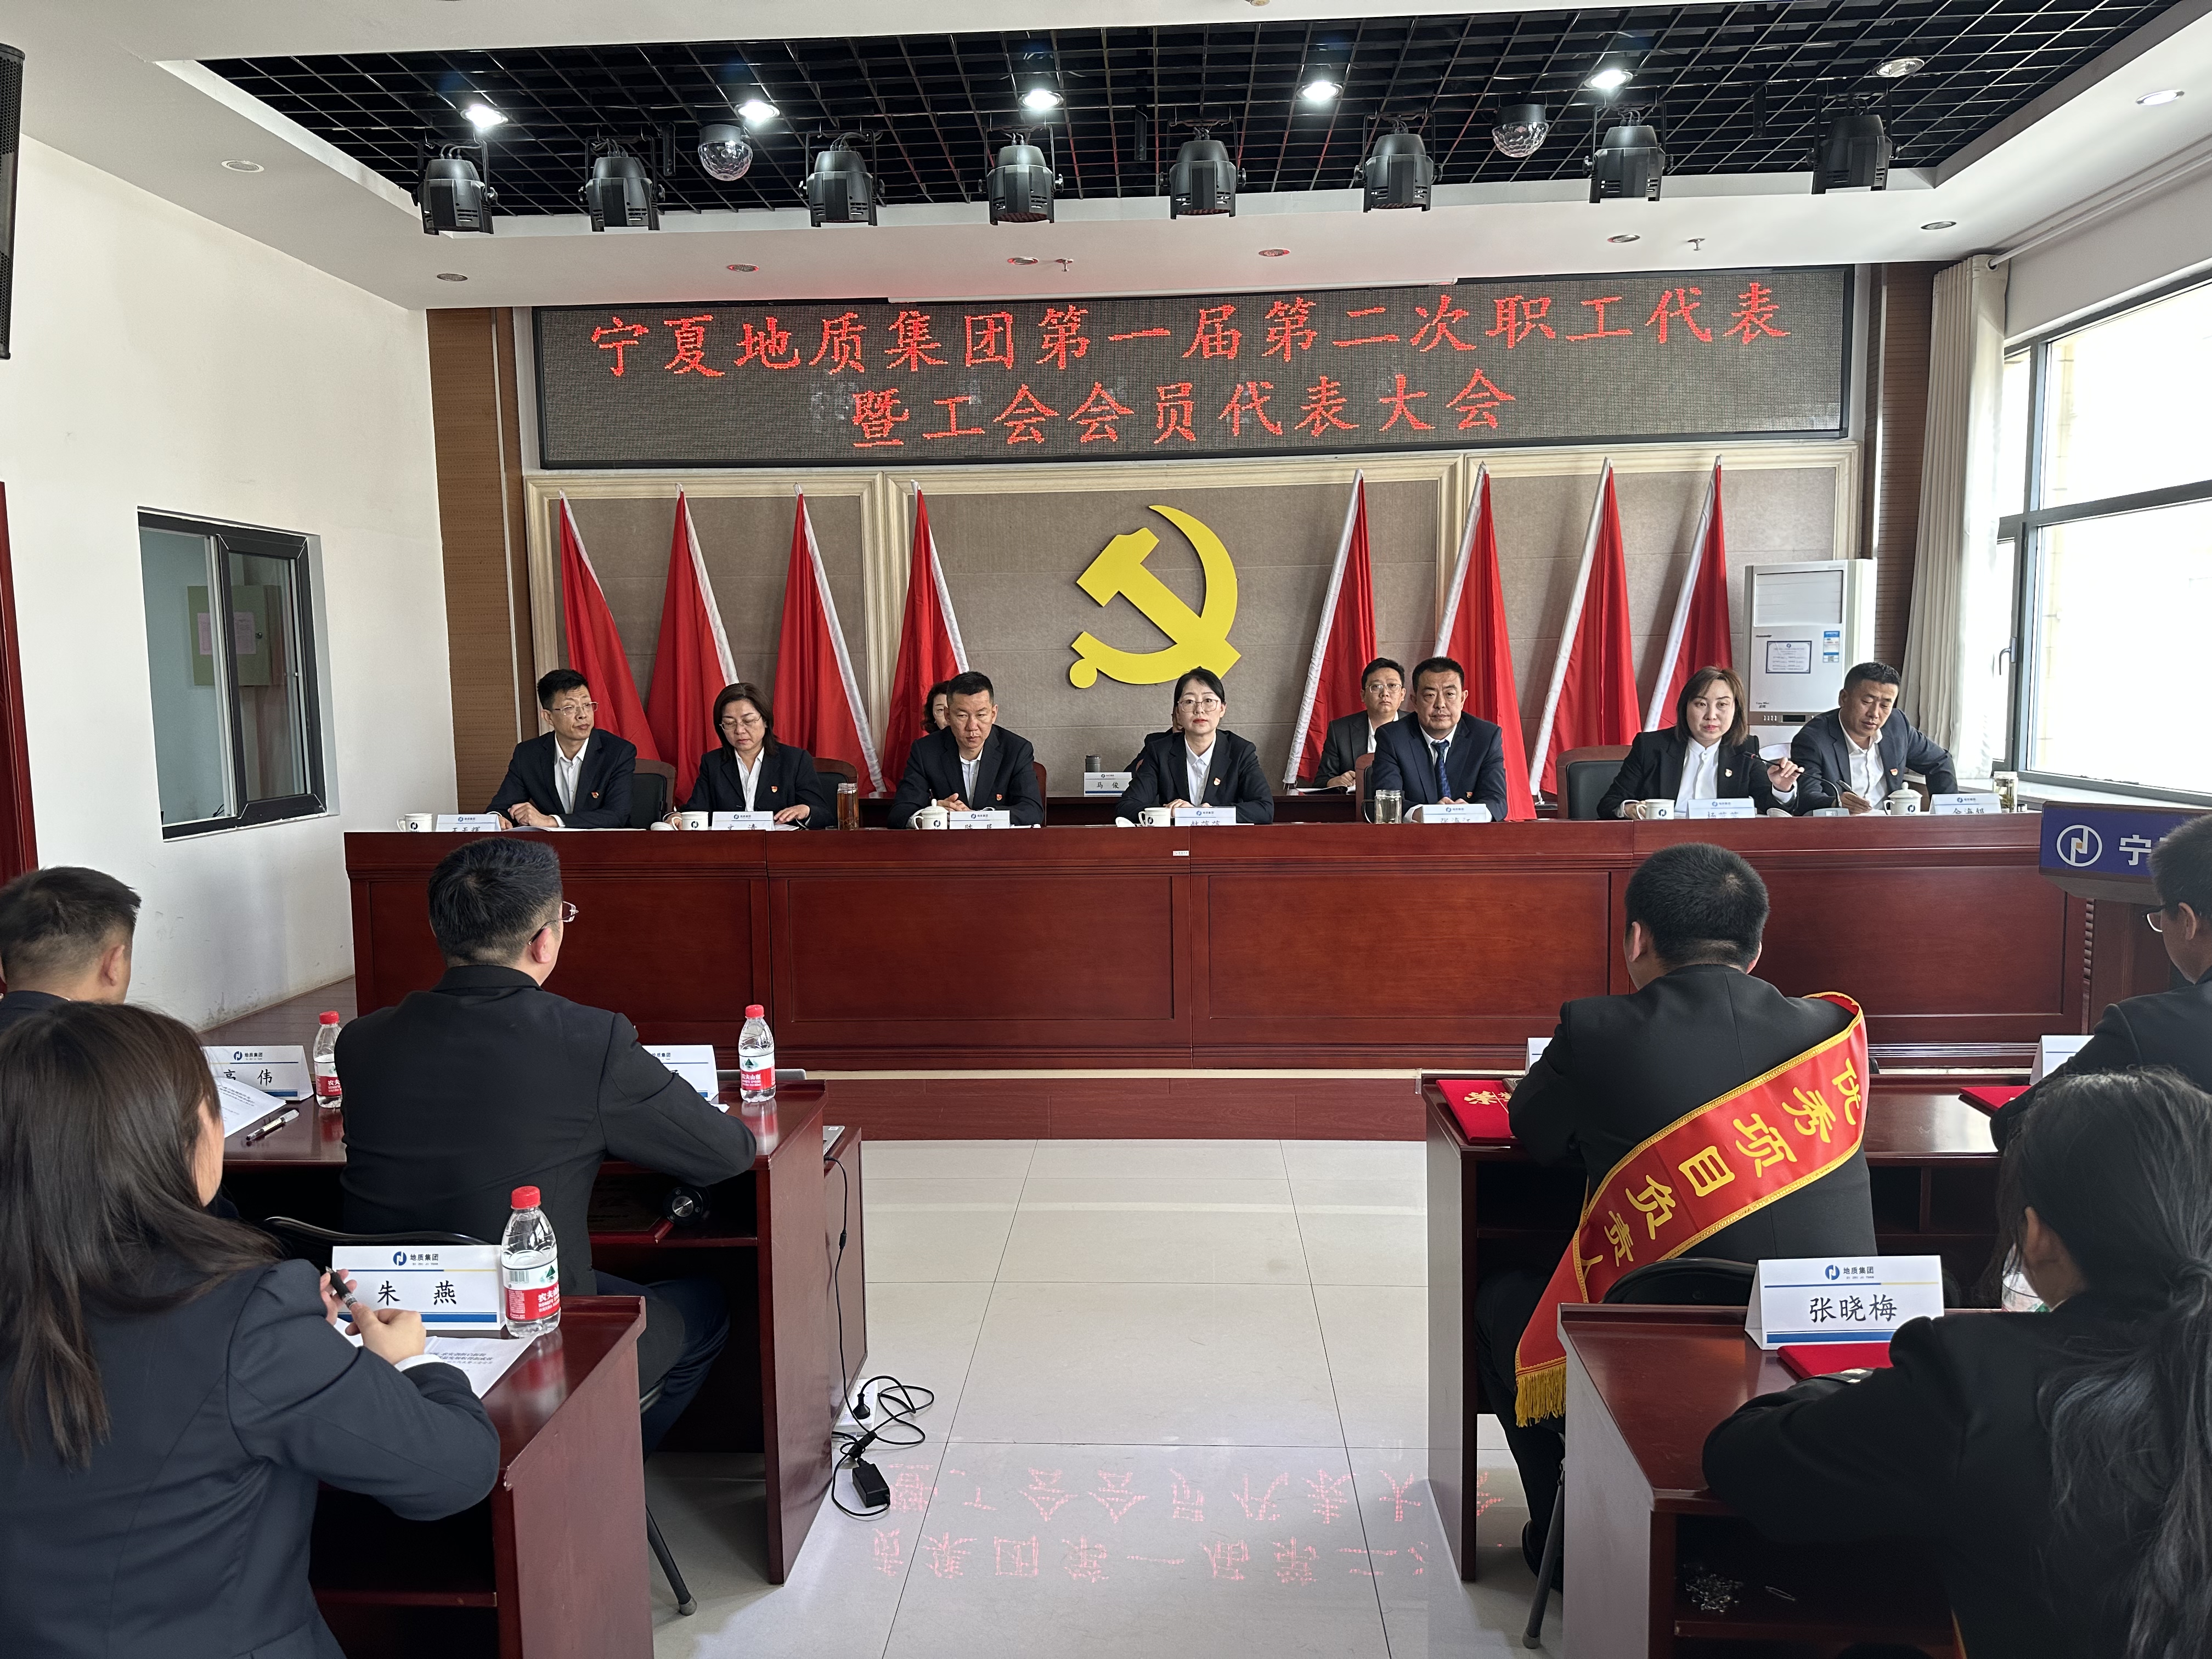 宁夏地质集团第一届第二次职工代表大会暨工会会员代表大会胜利召开